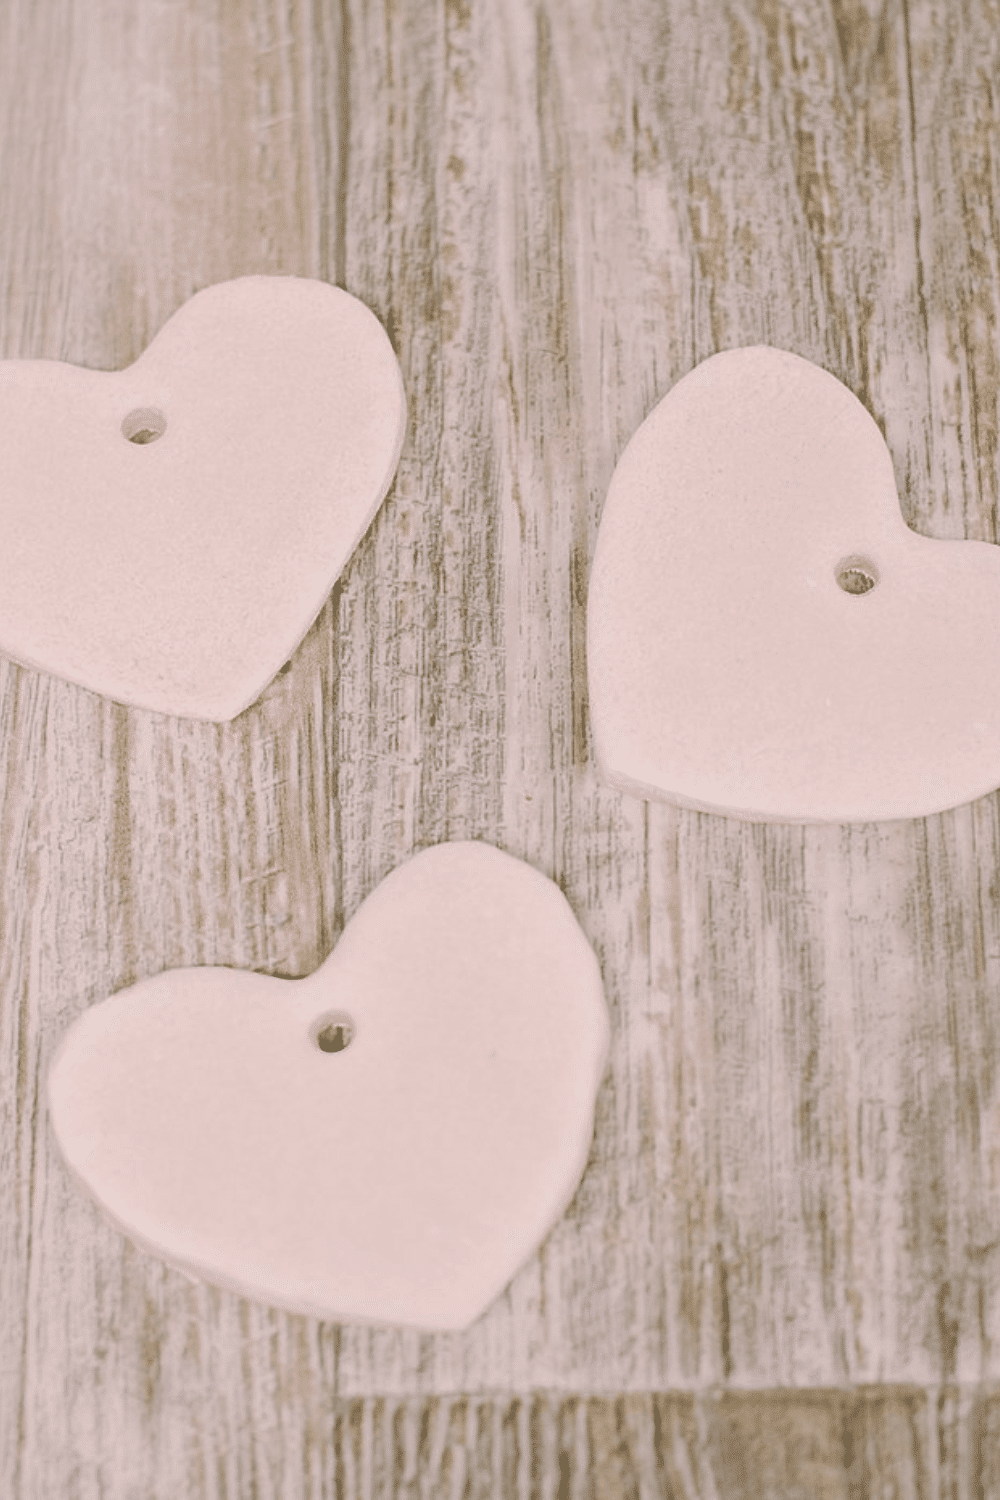 How to Make a Salt Dough Heart